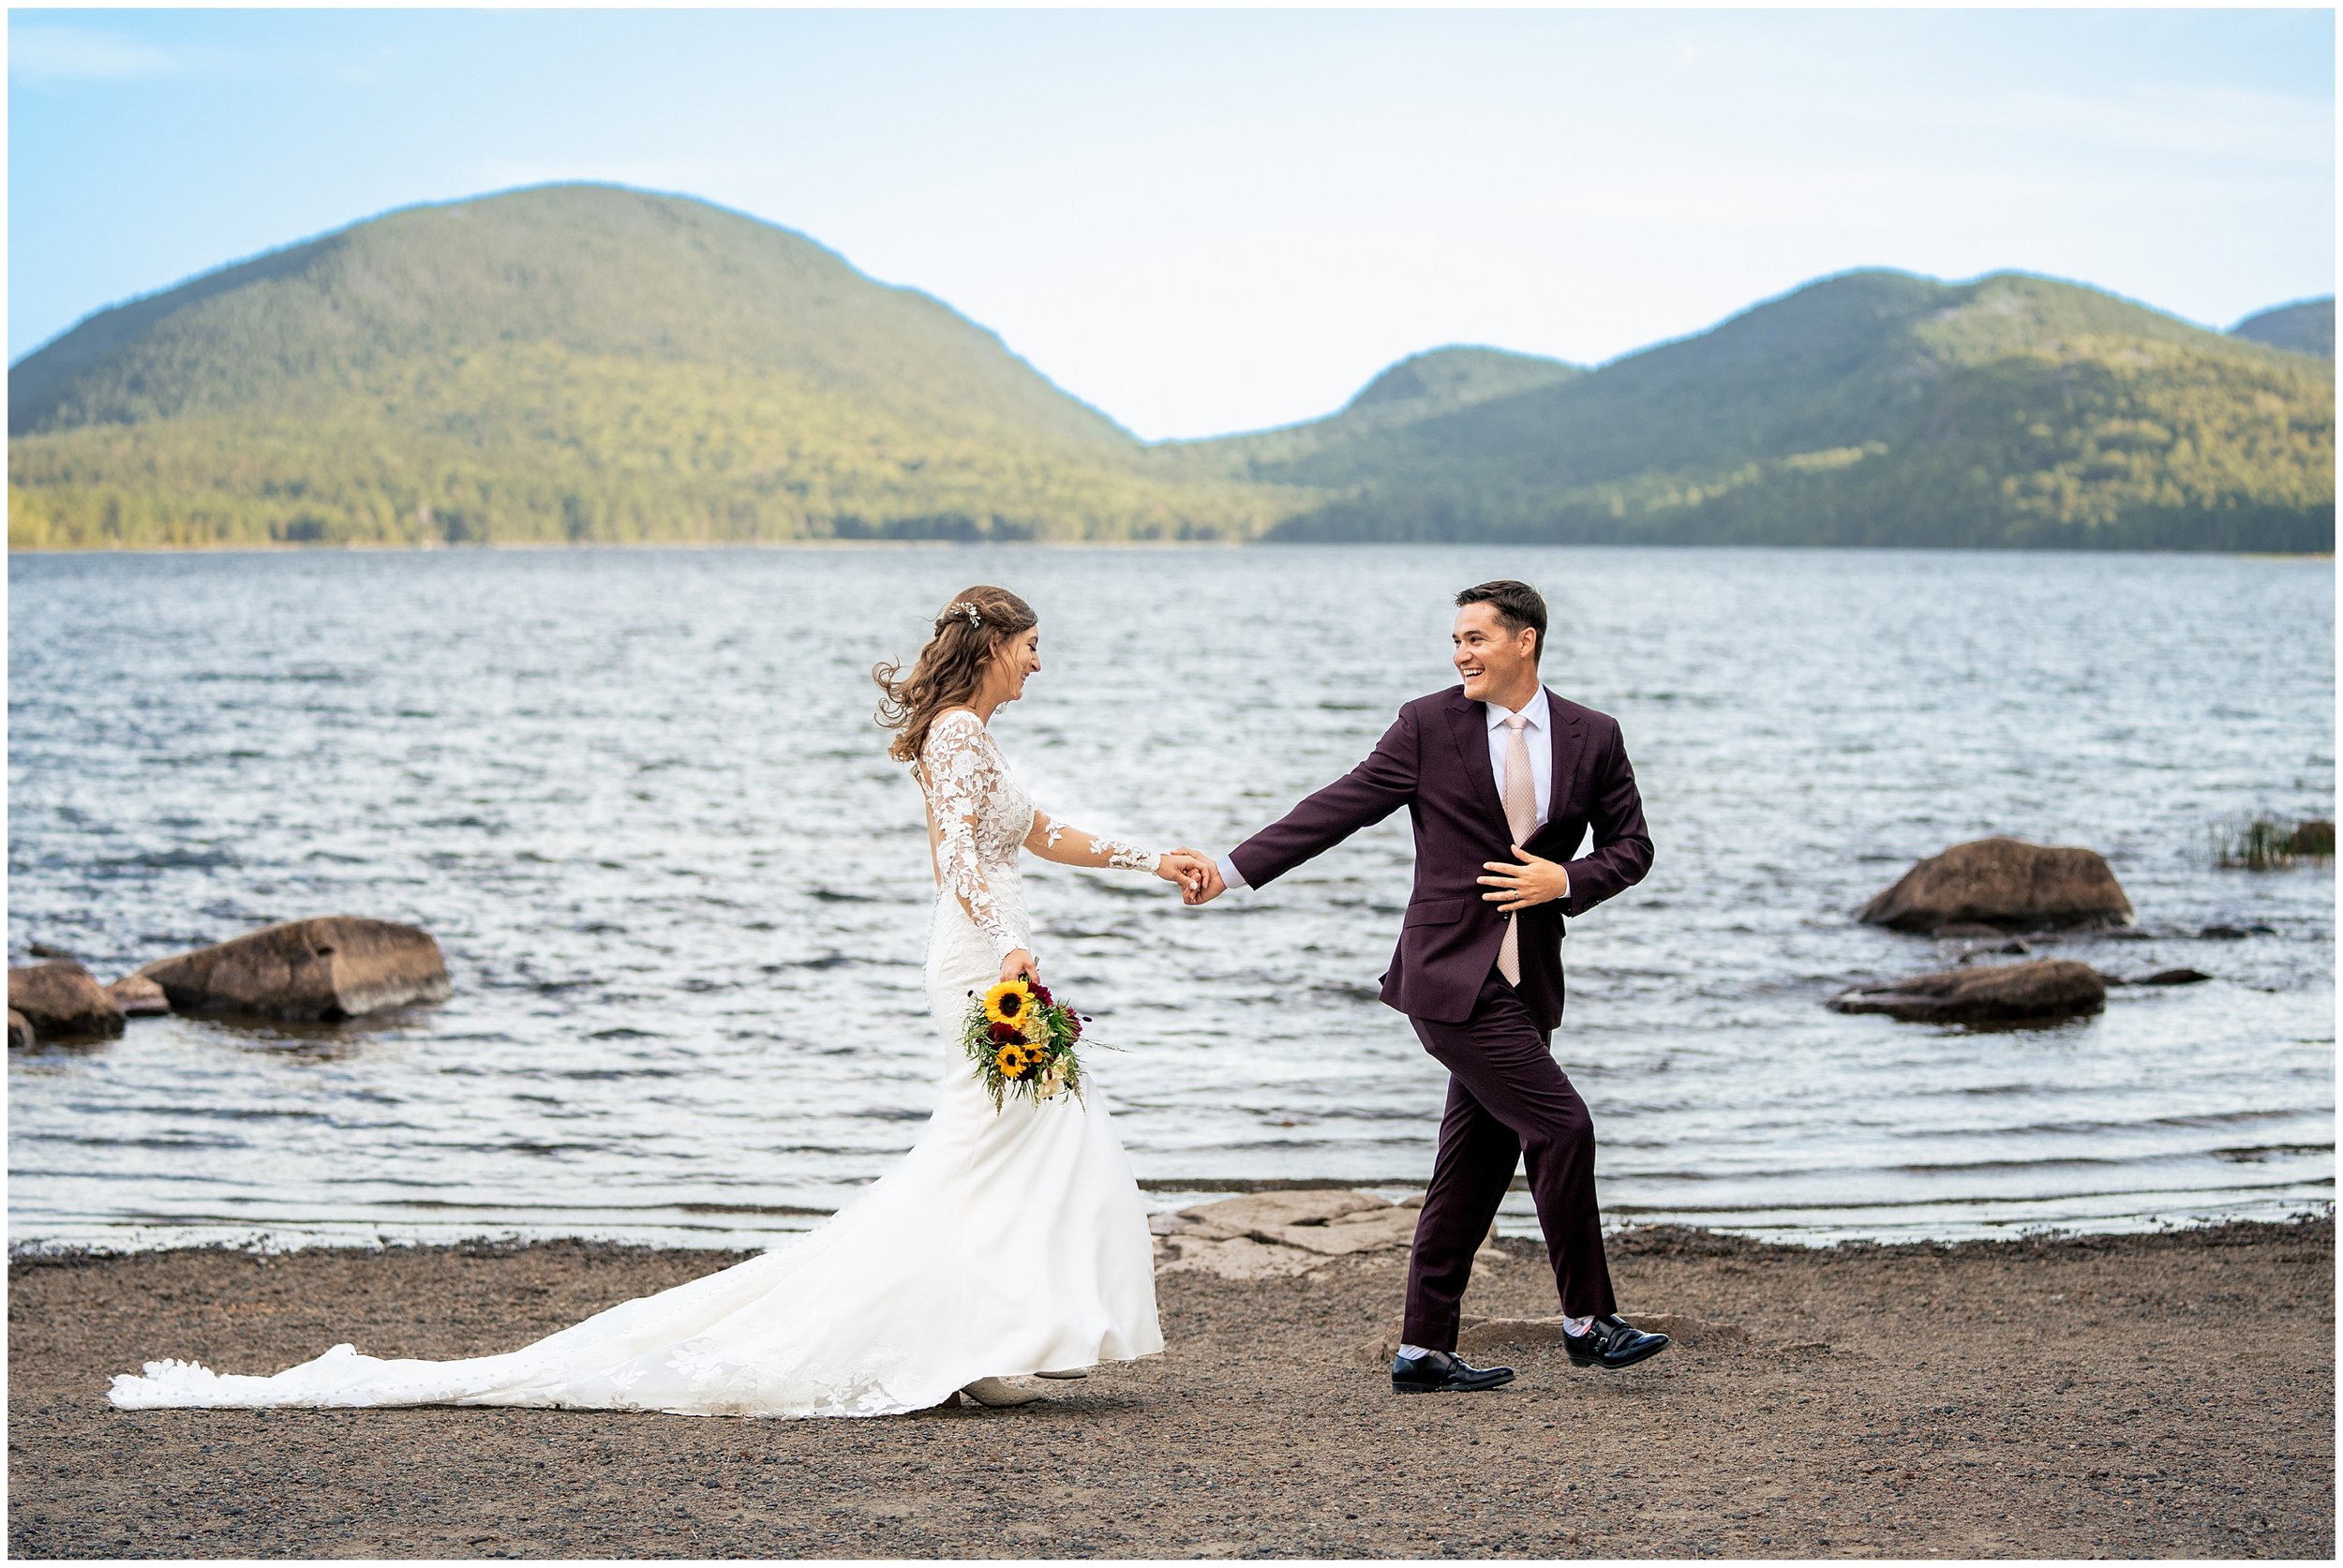 Acadia National Park Wedding Photographers, Bar Harbor Wedding Photographers, Two Adventurous Souls- 082423_0048.jpg